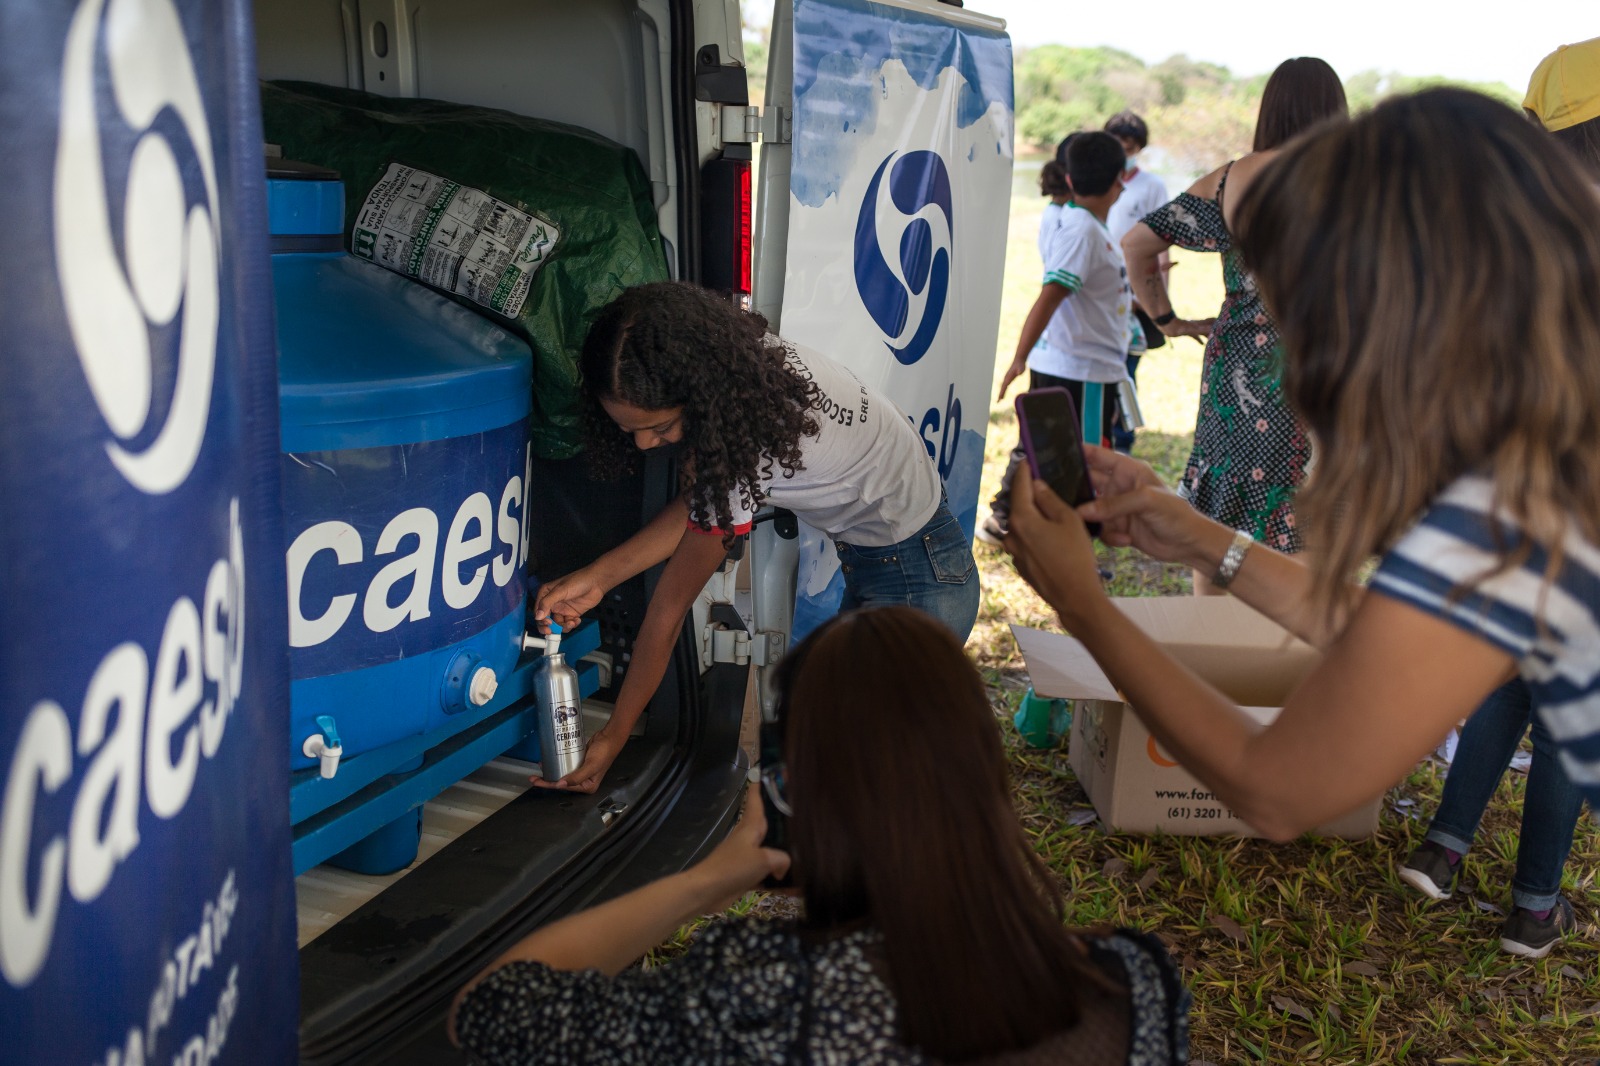 Caesb dará 15 mil litros de água para atender 72 mil pessoas em cinco eventos no DF